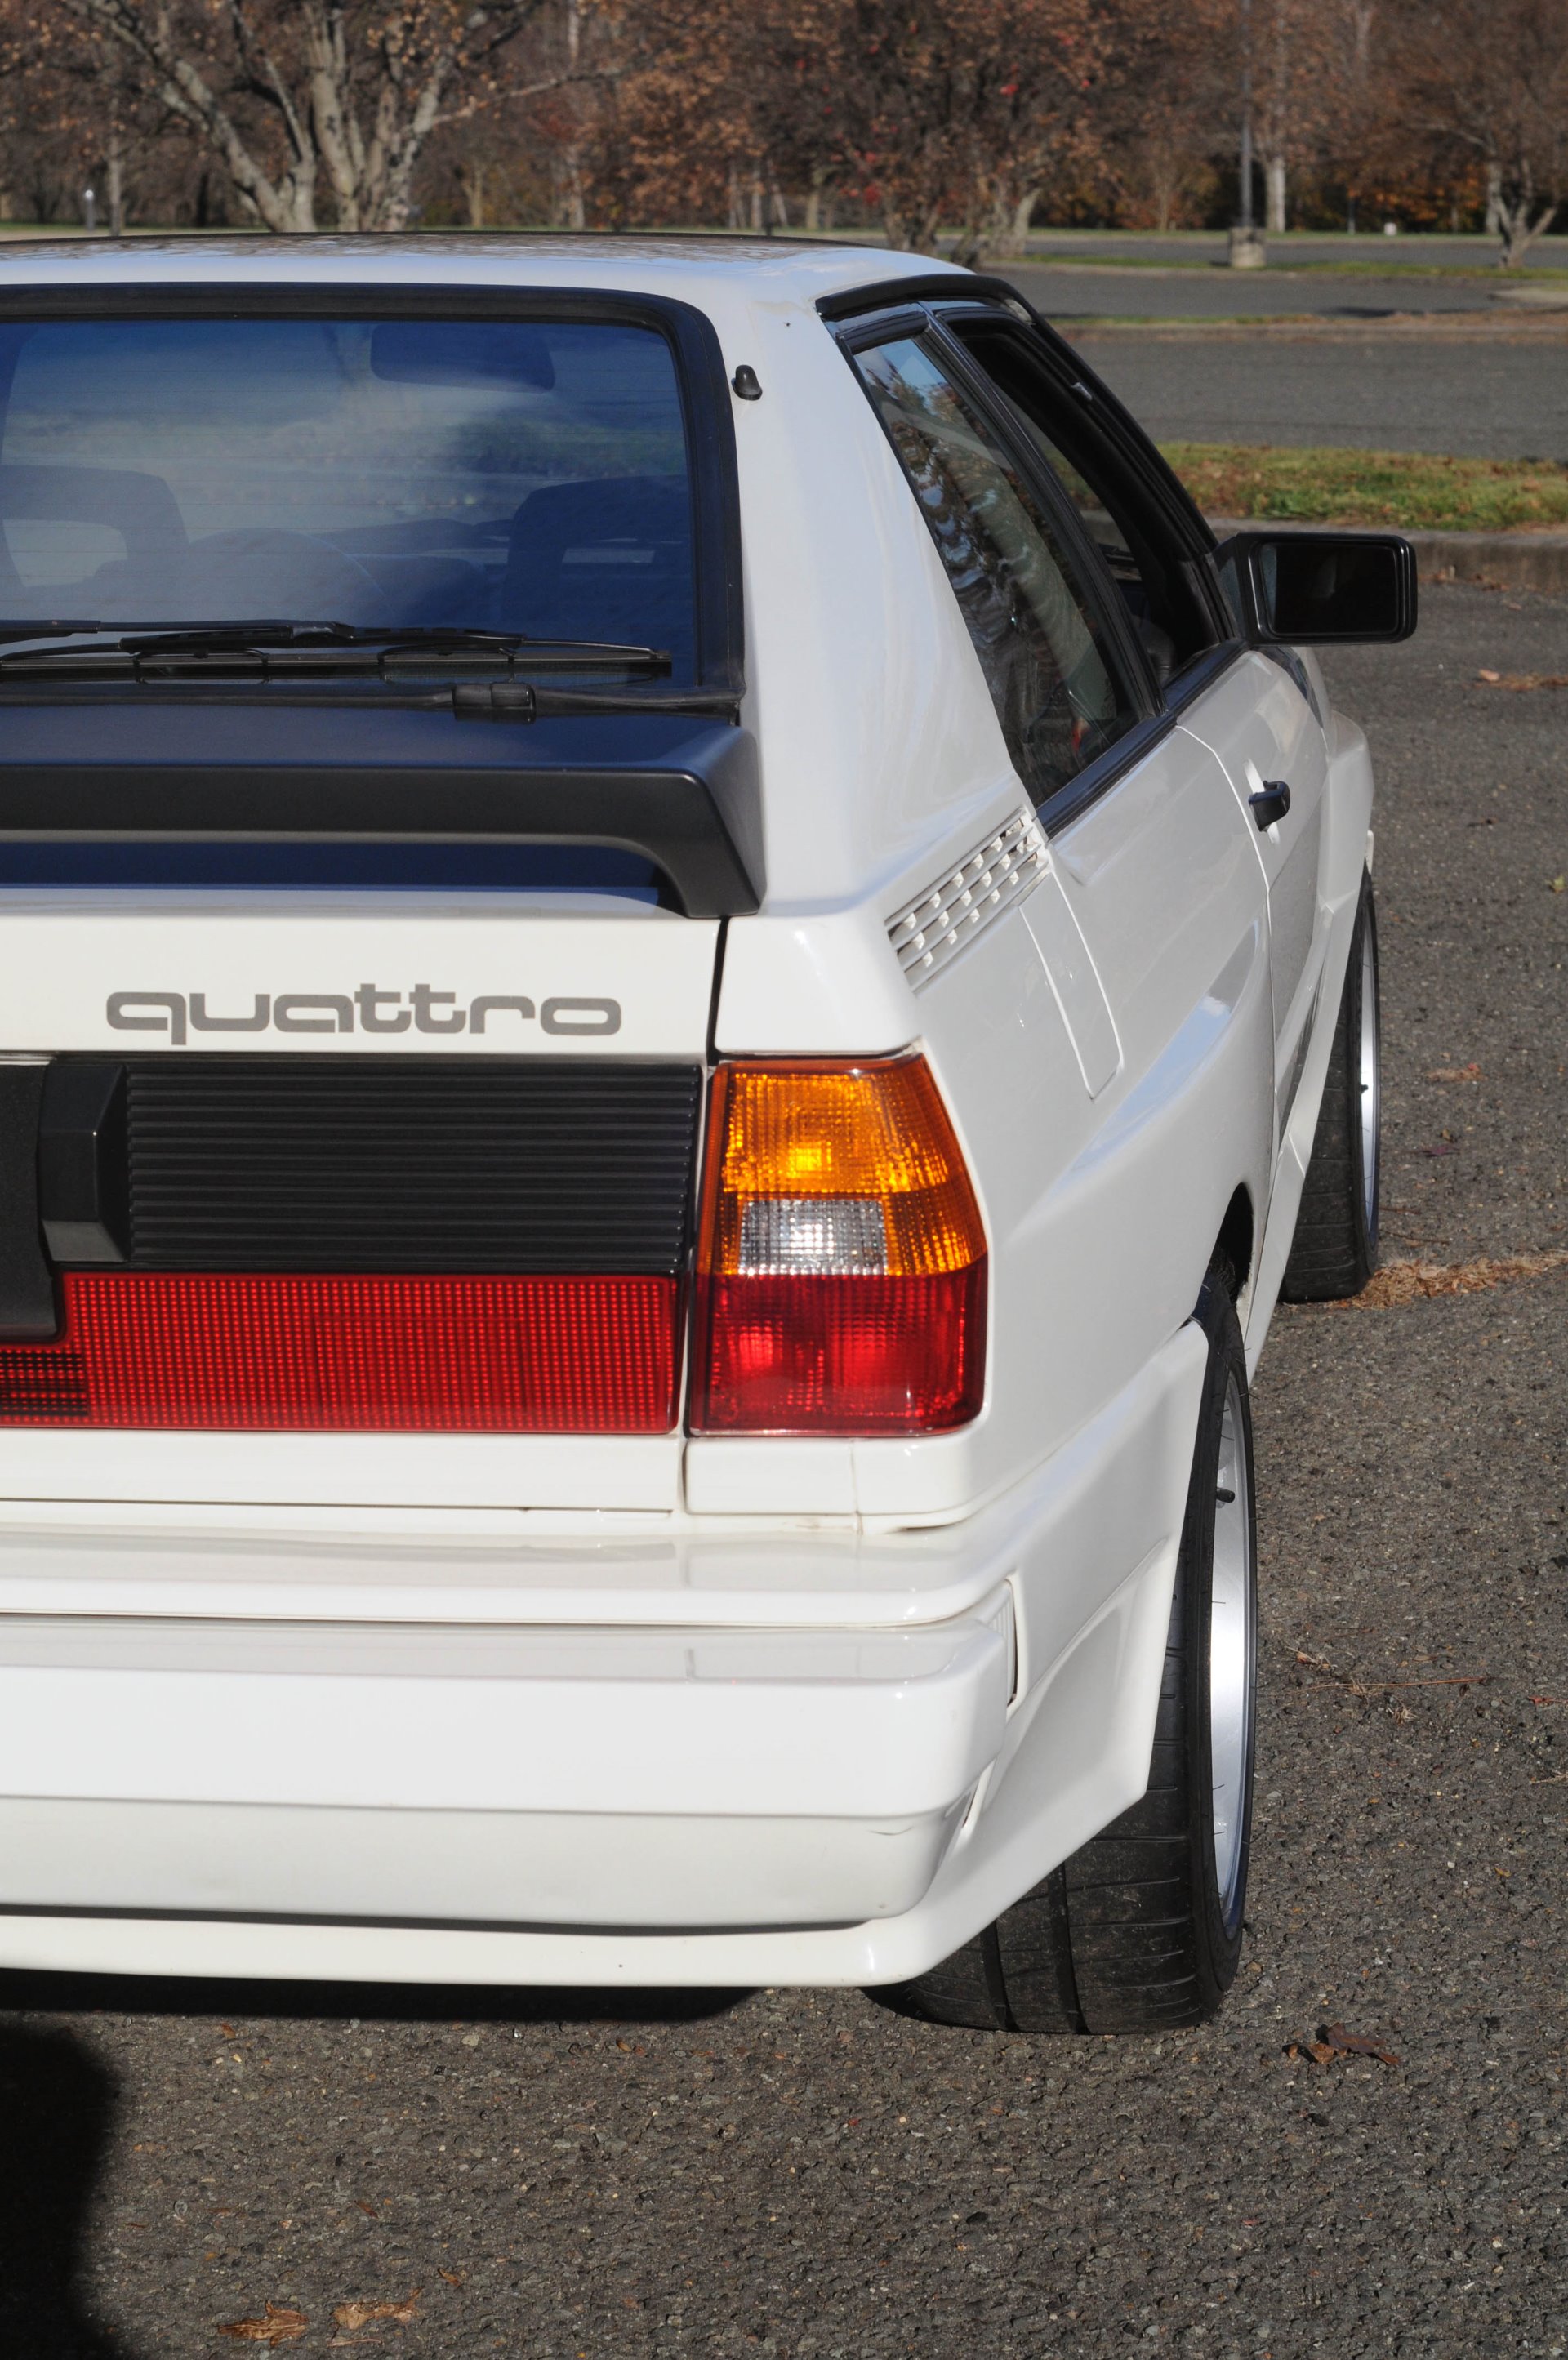 Used 1984 Audi Ur Quattro For Sale (Special Pricing) | Ambassador ...